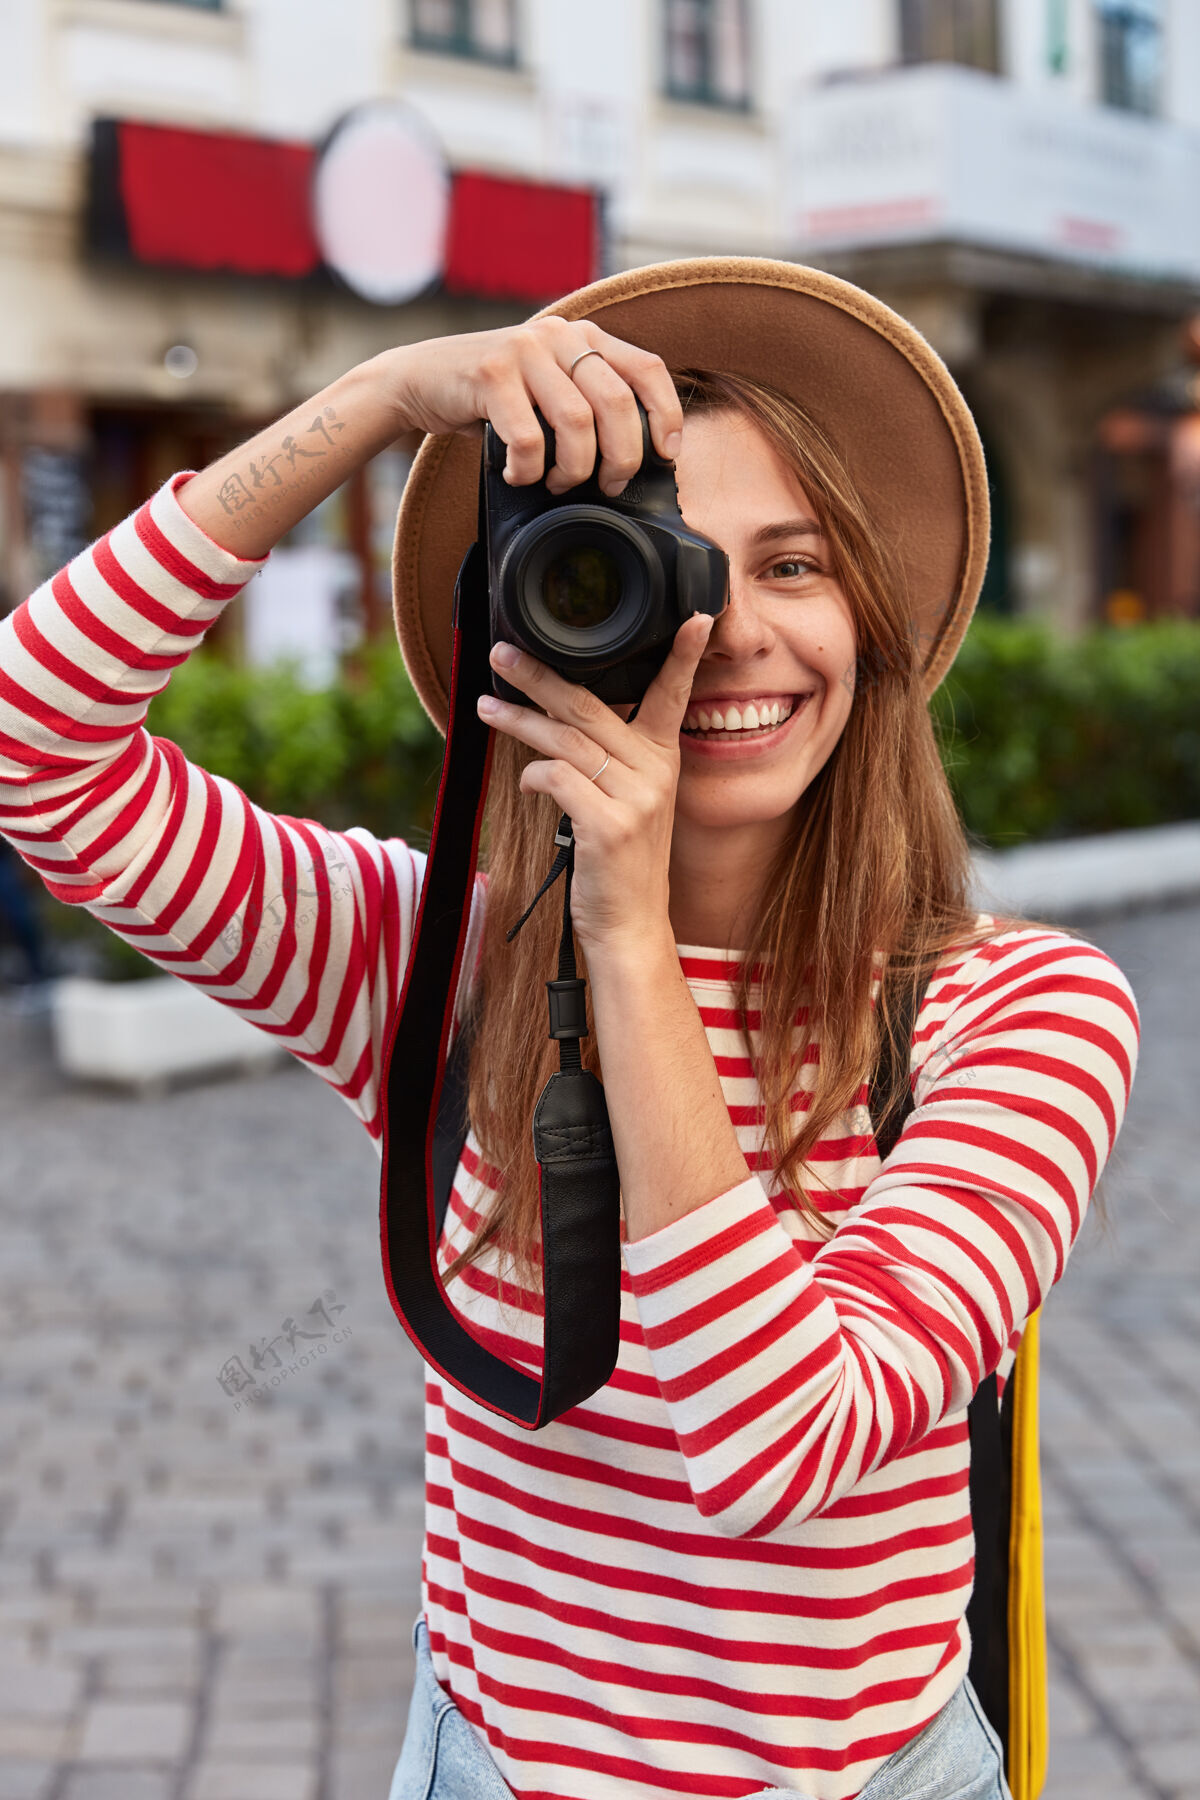 广场高兴的游客在相机上专业拍照 笑容灿烂 关注美丽的地标 漫步在市中心 戴着帽子城镇条纹帽子